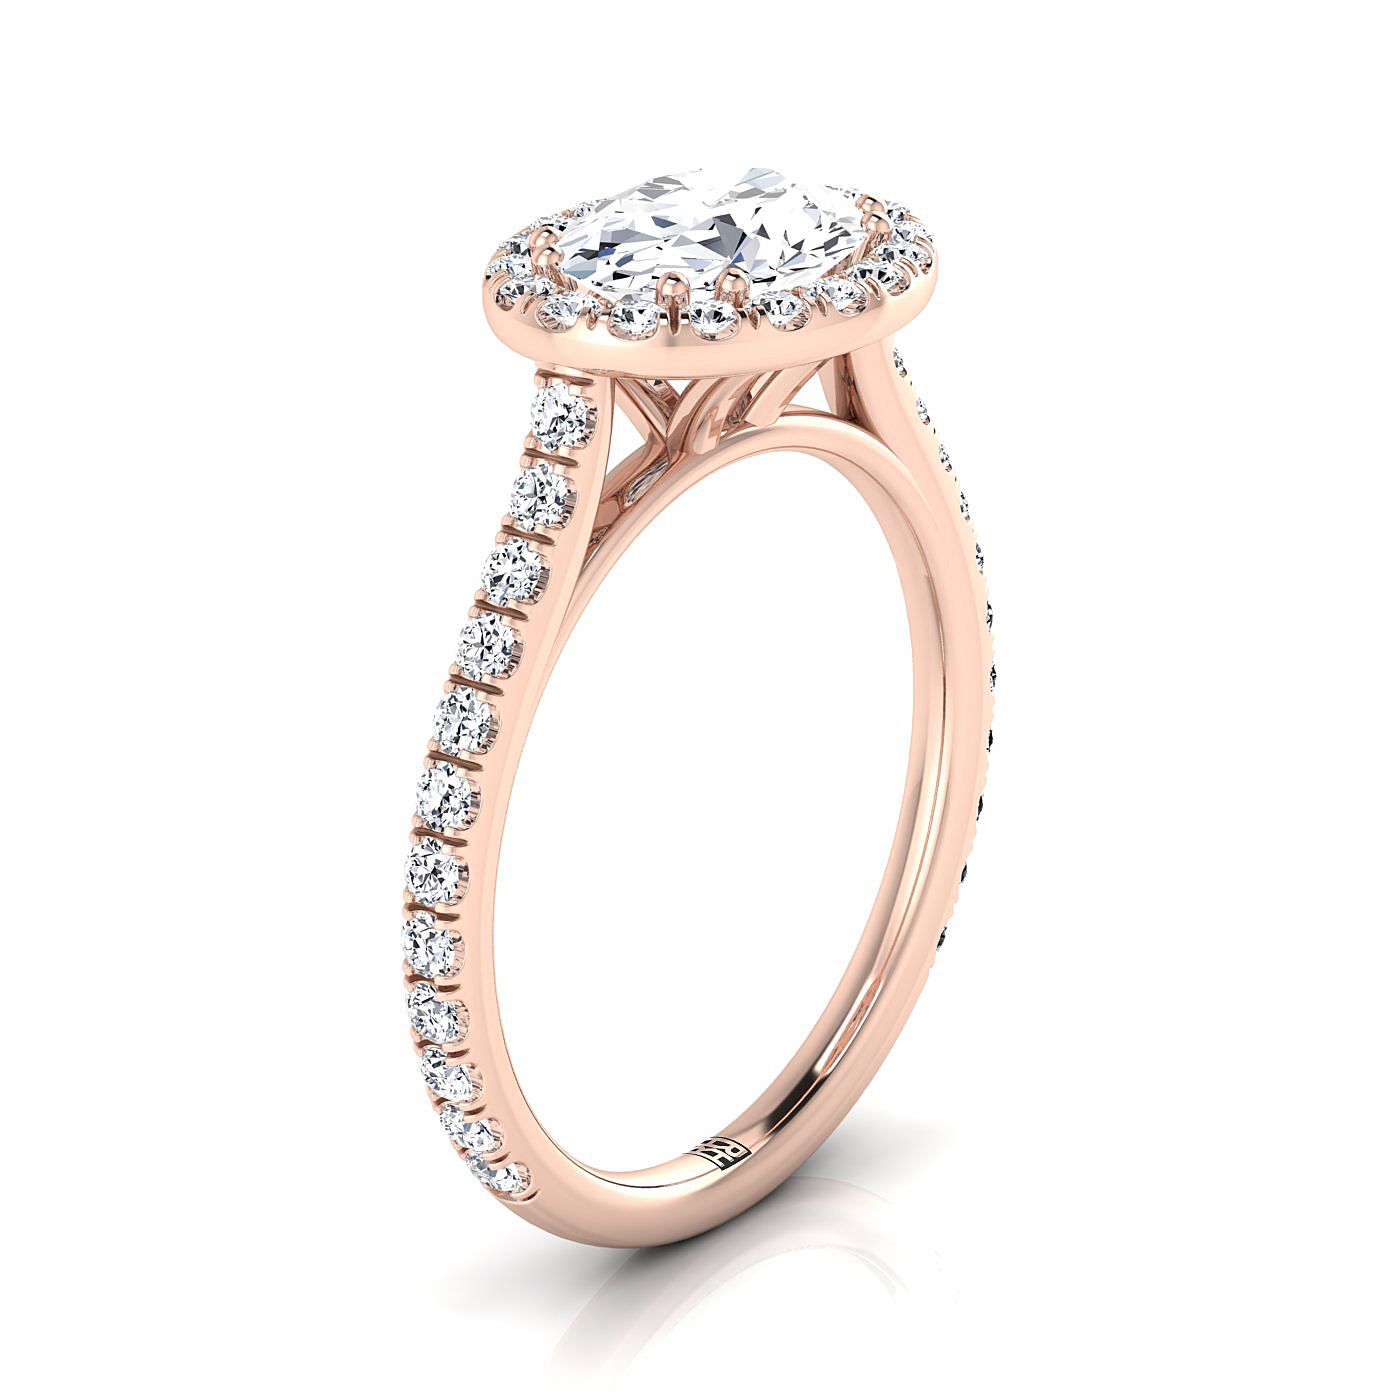 14K Rose Gold Oval Aquamarine Horizontal Fancy East West Diamond Halo Engagement Ring -1/2ctw